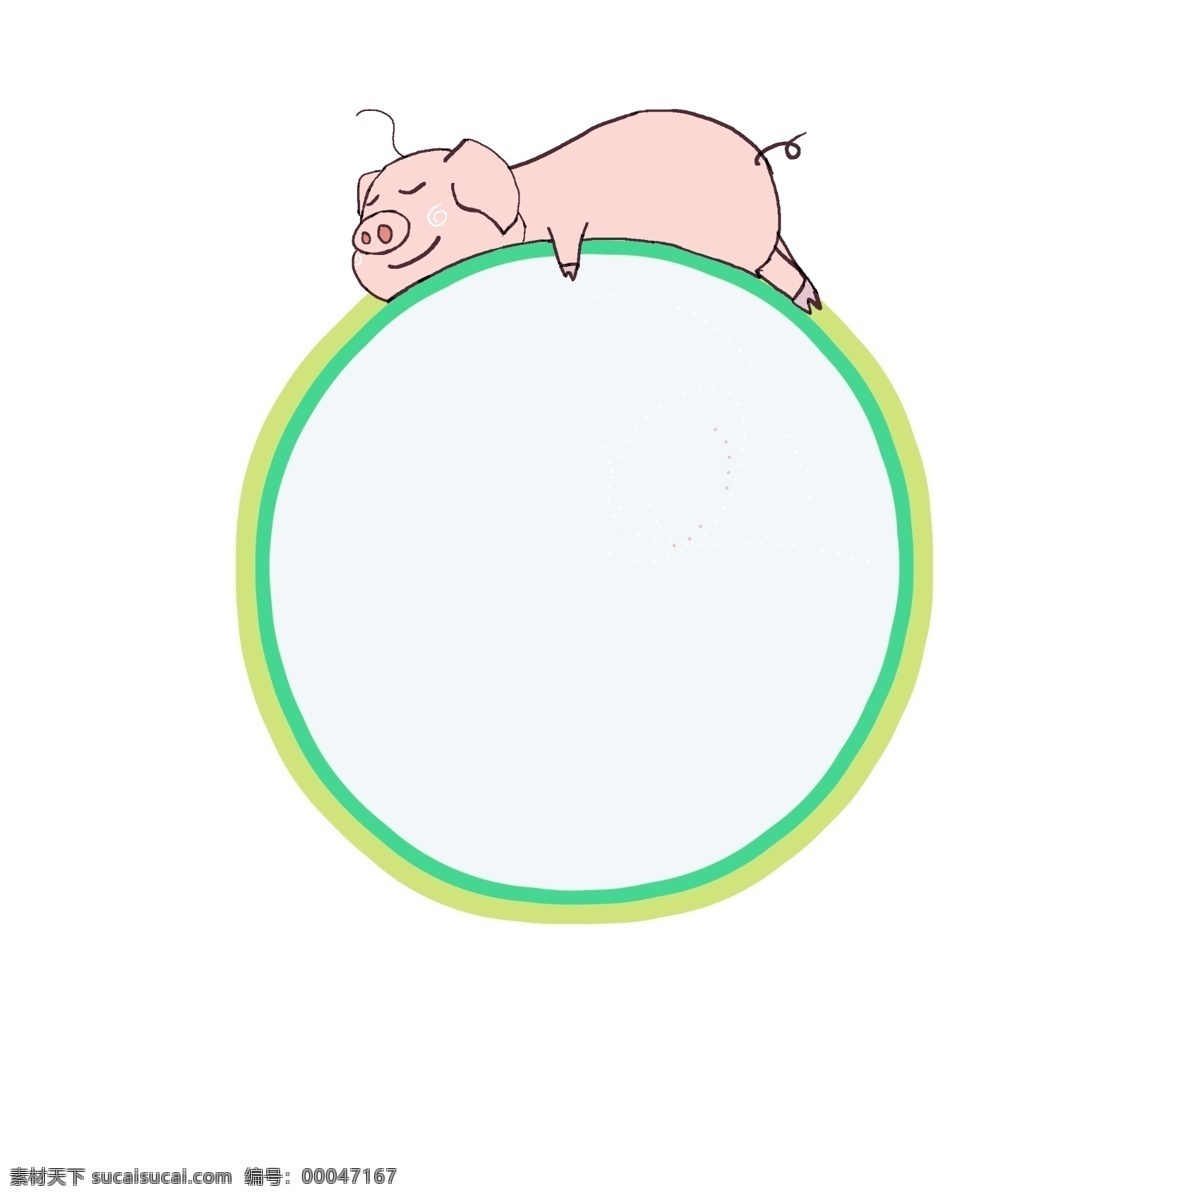 小 猪 边框 卡通 插画 小猪的边框 卡通插画 边框插画 简易边框 框架 框子 框框 圆圆的边框